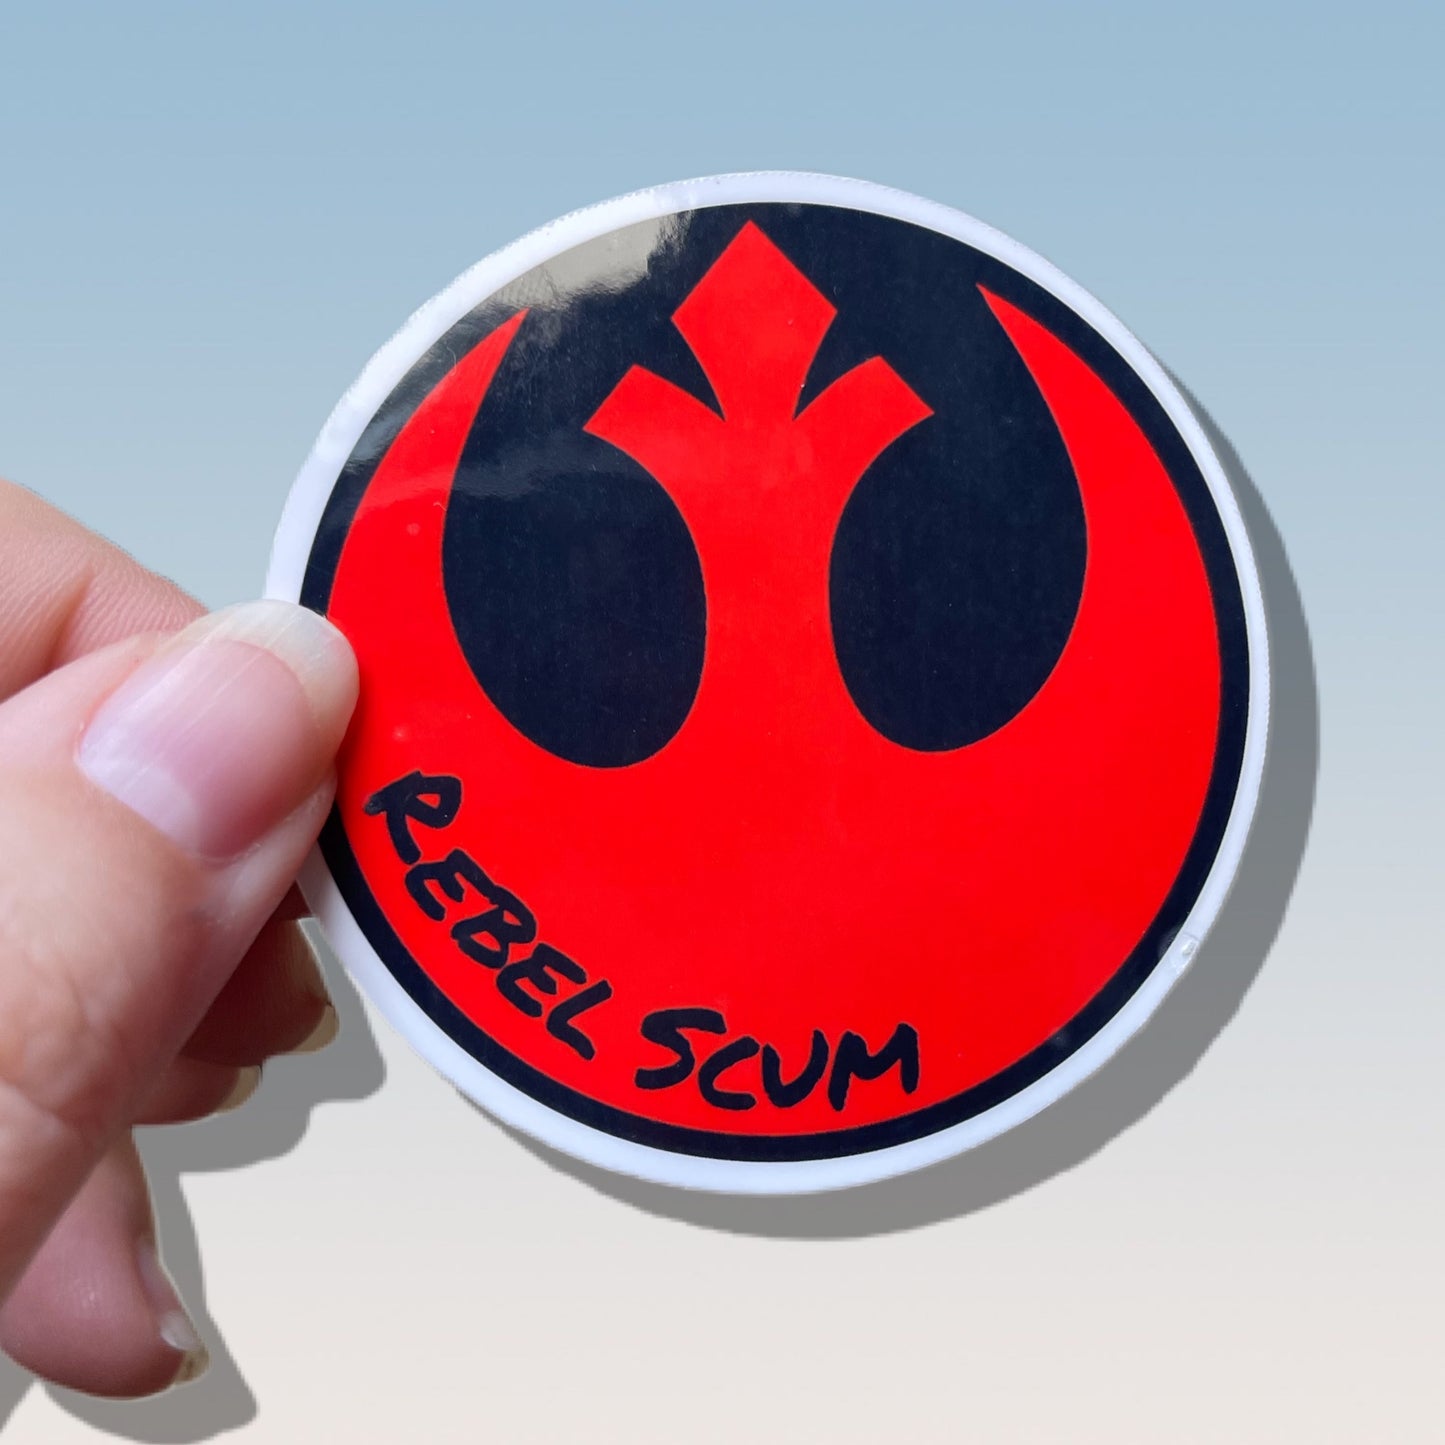 Rebel Scum Sticker